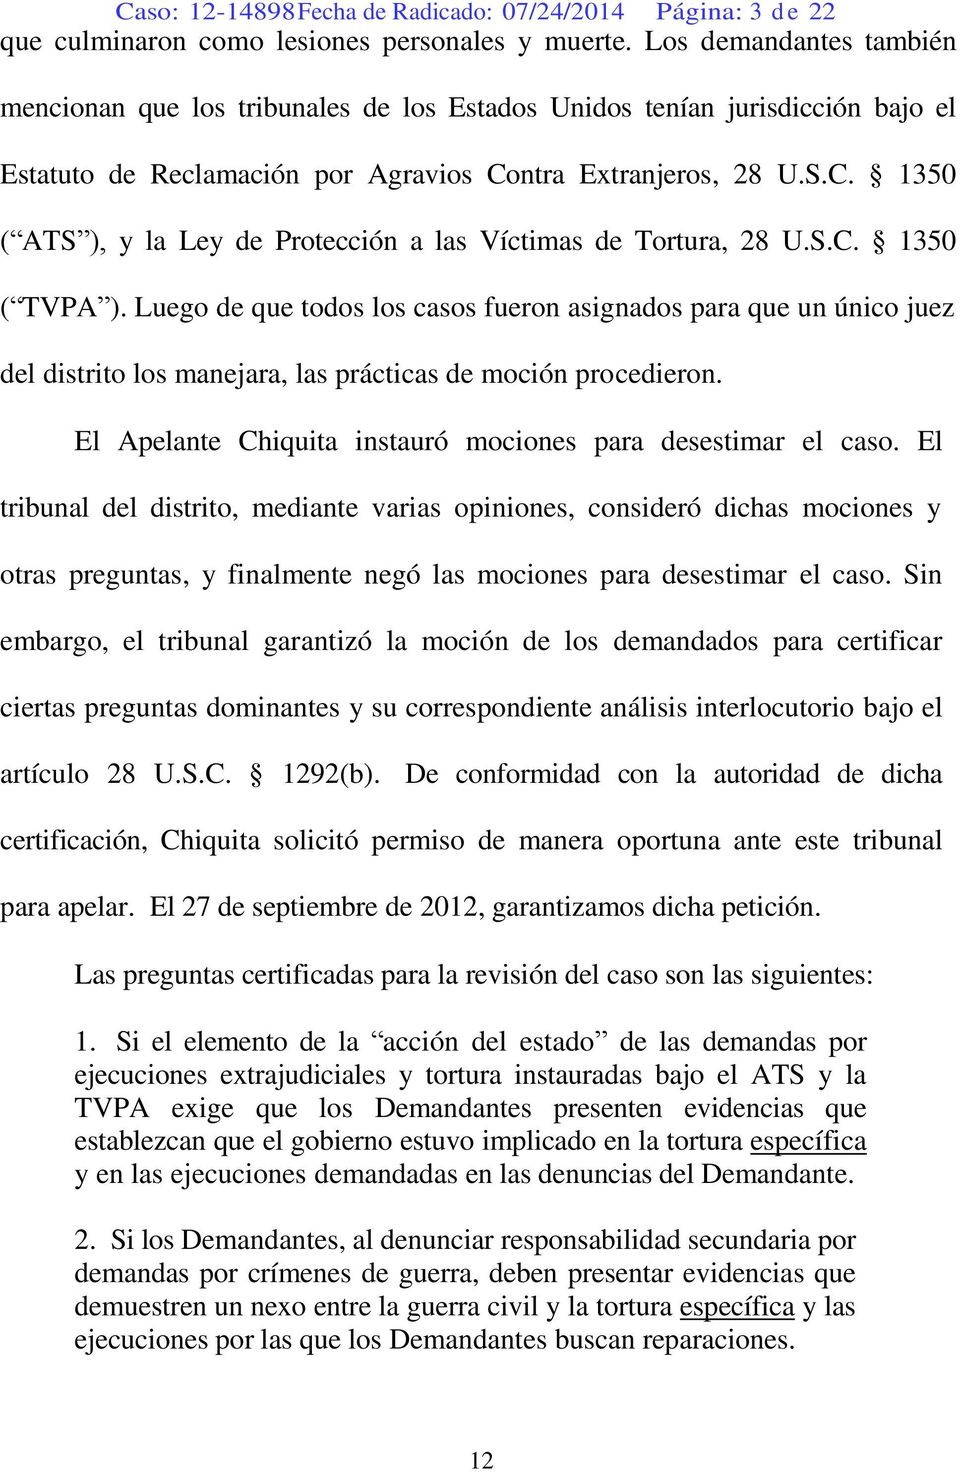 ntra Extranjeros, 28 U.S.C. 1350 ( ATS ), y la Ley de Protección a las Víctimas de Tortura, 28 U.S.C. 1350 ( TVPA ).